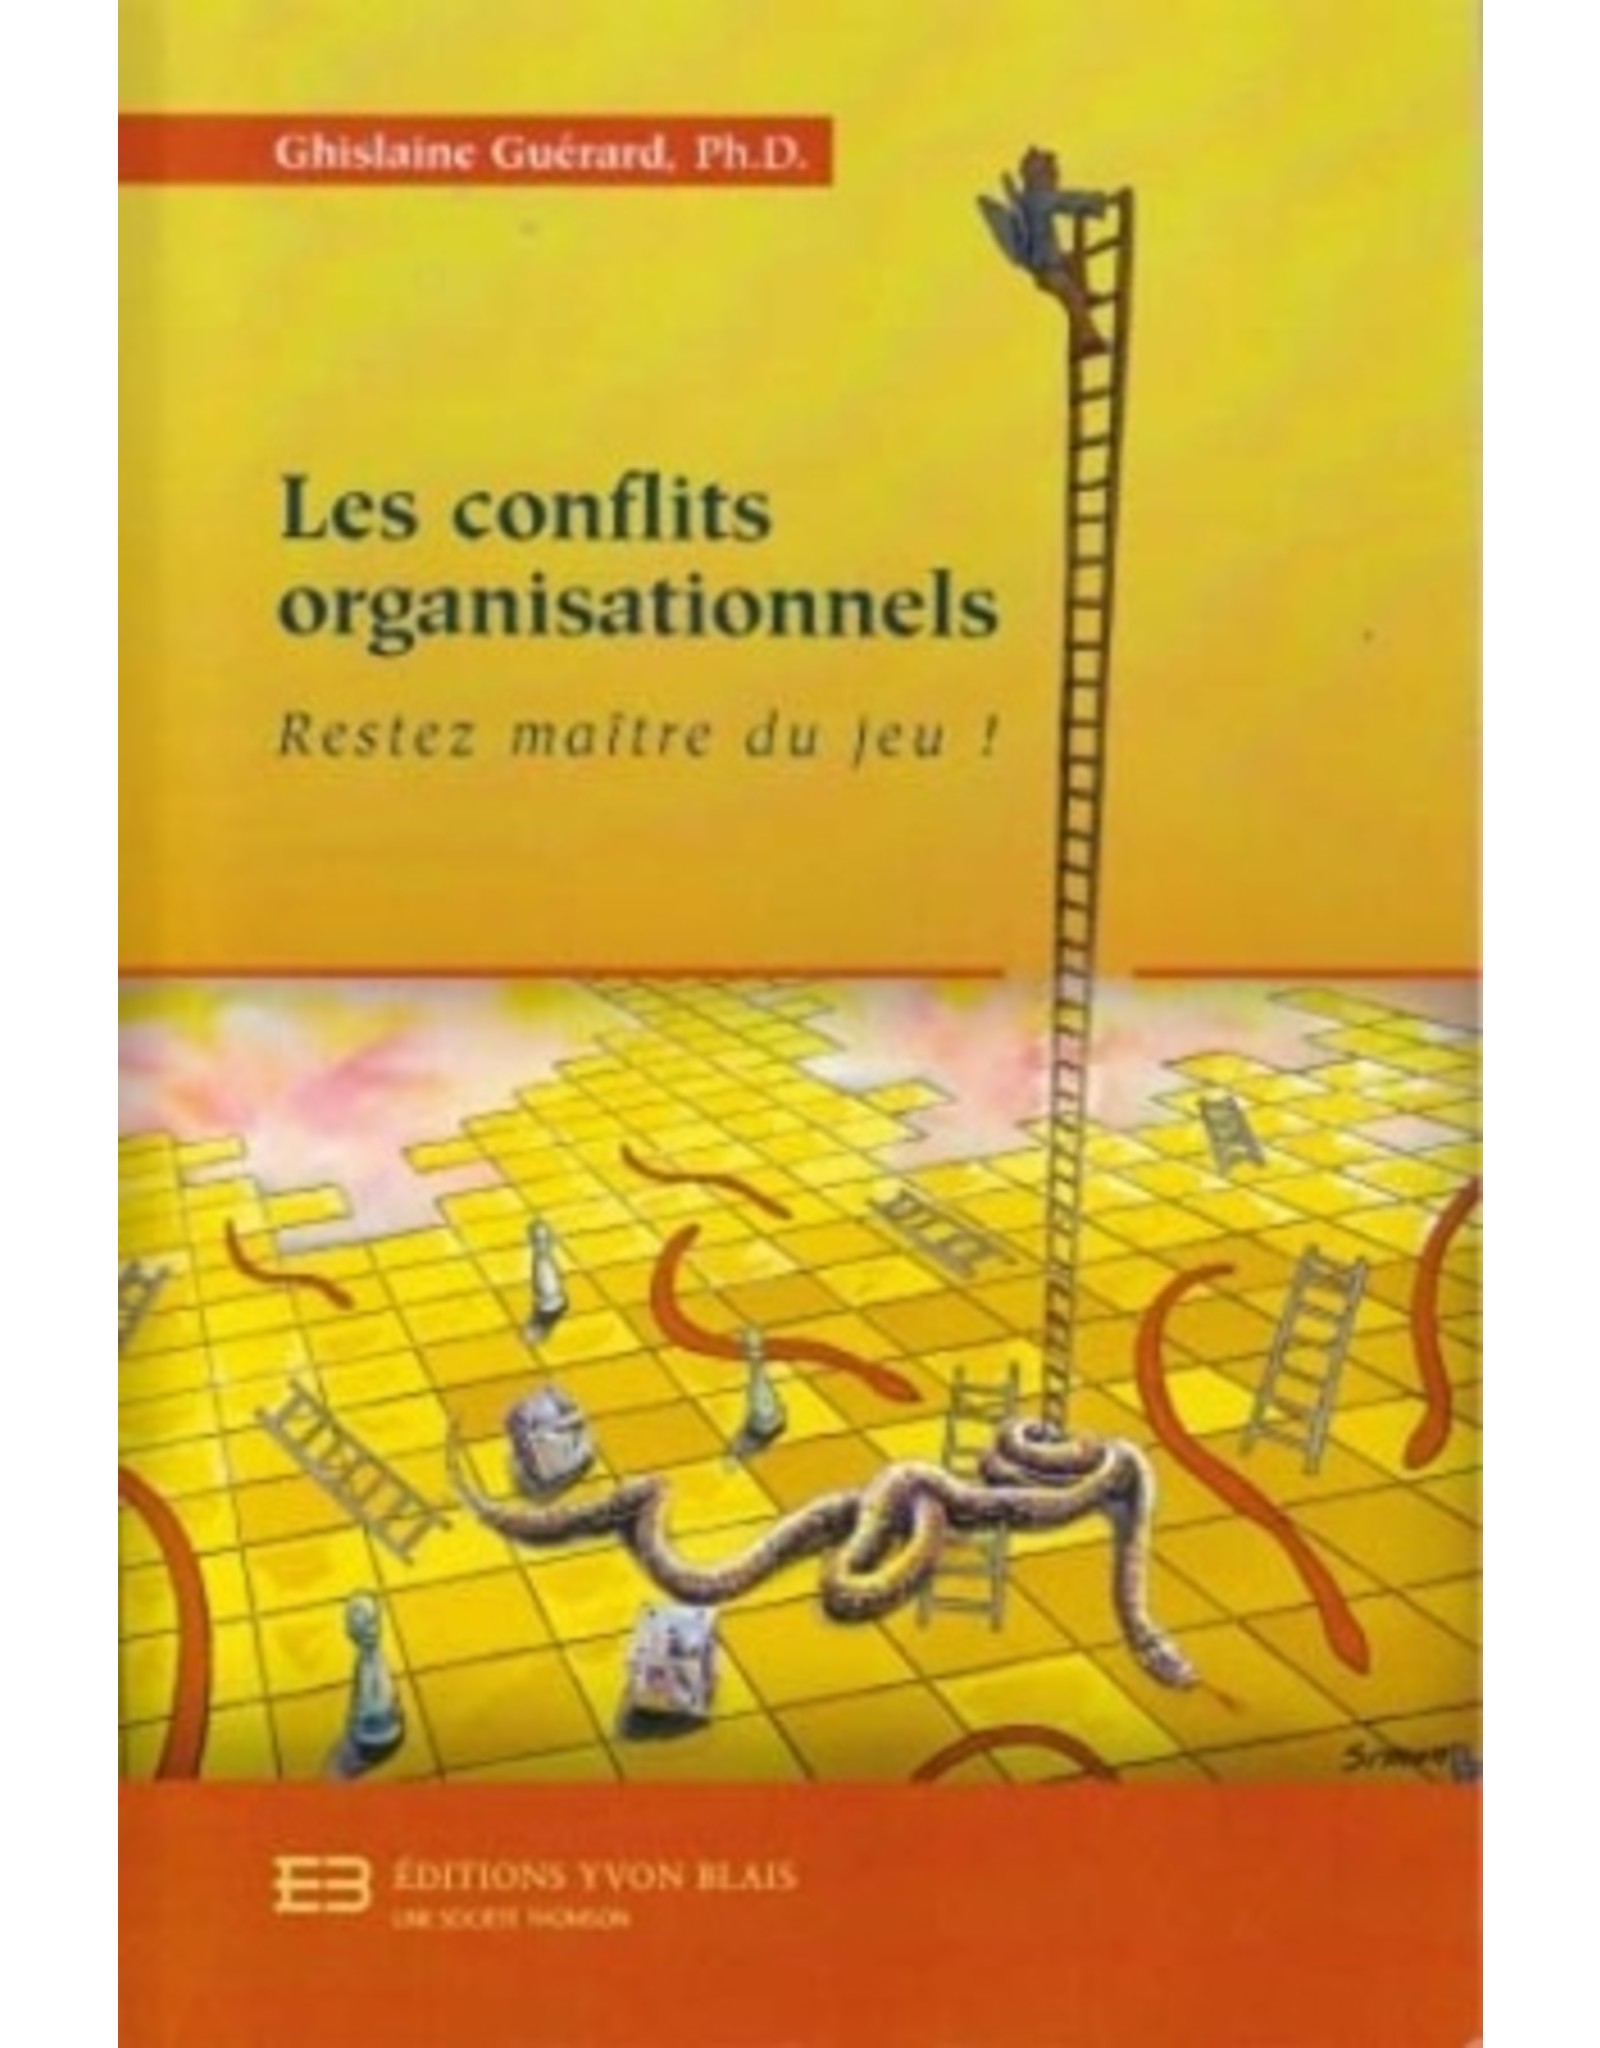 Textbook Les conflits organisationnels: restez maître du jeu!